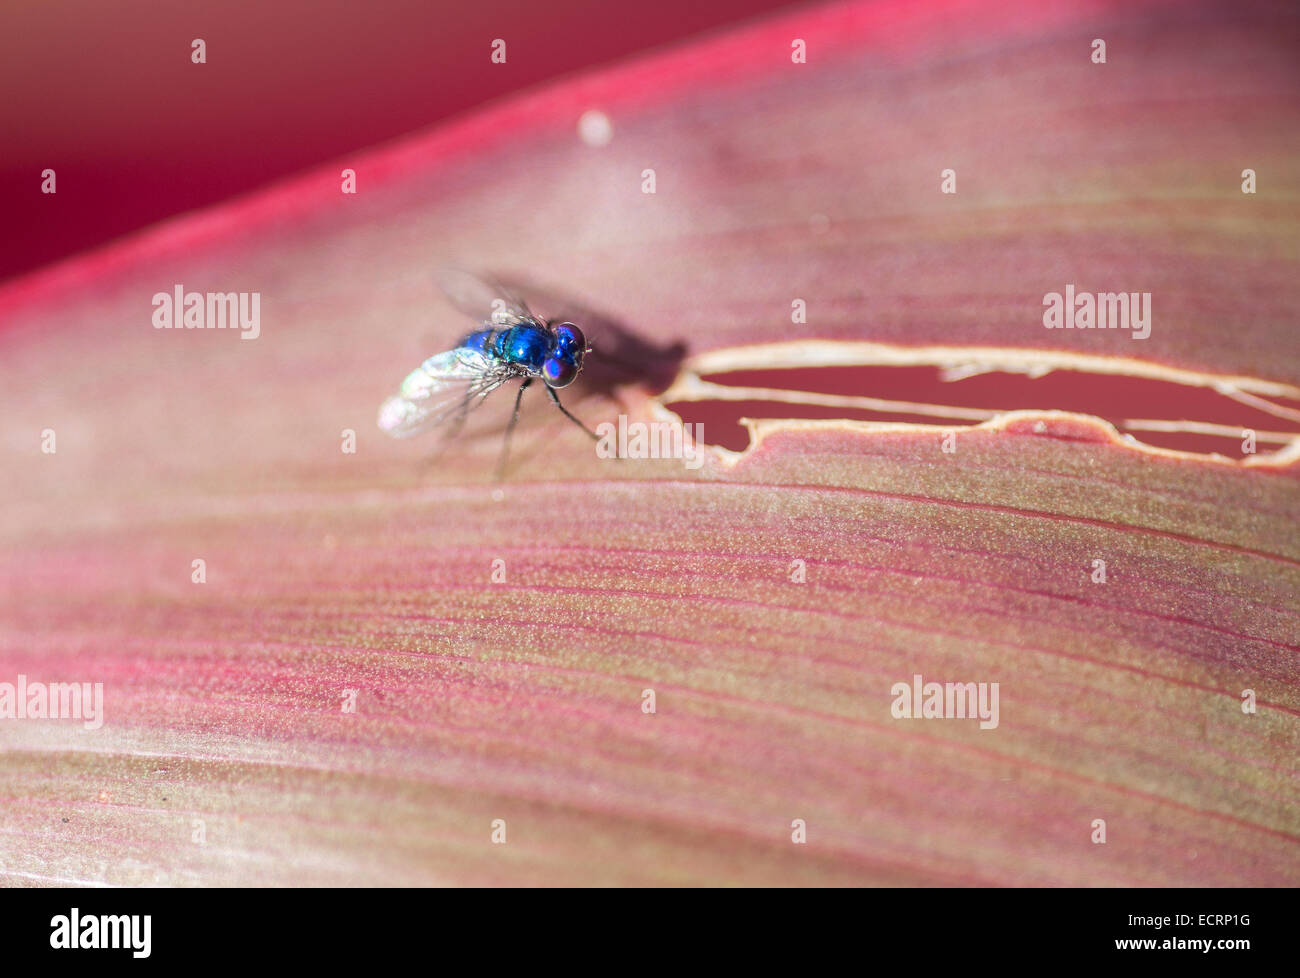 Diminuta mosca azul en hojas de plantas Foto de stock